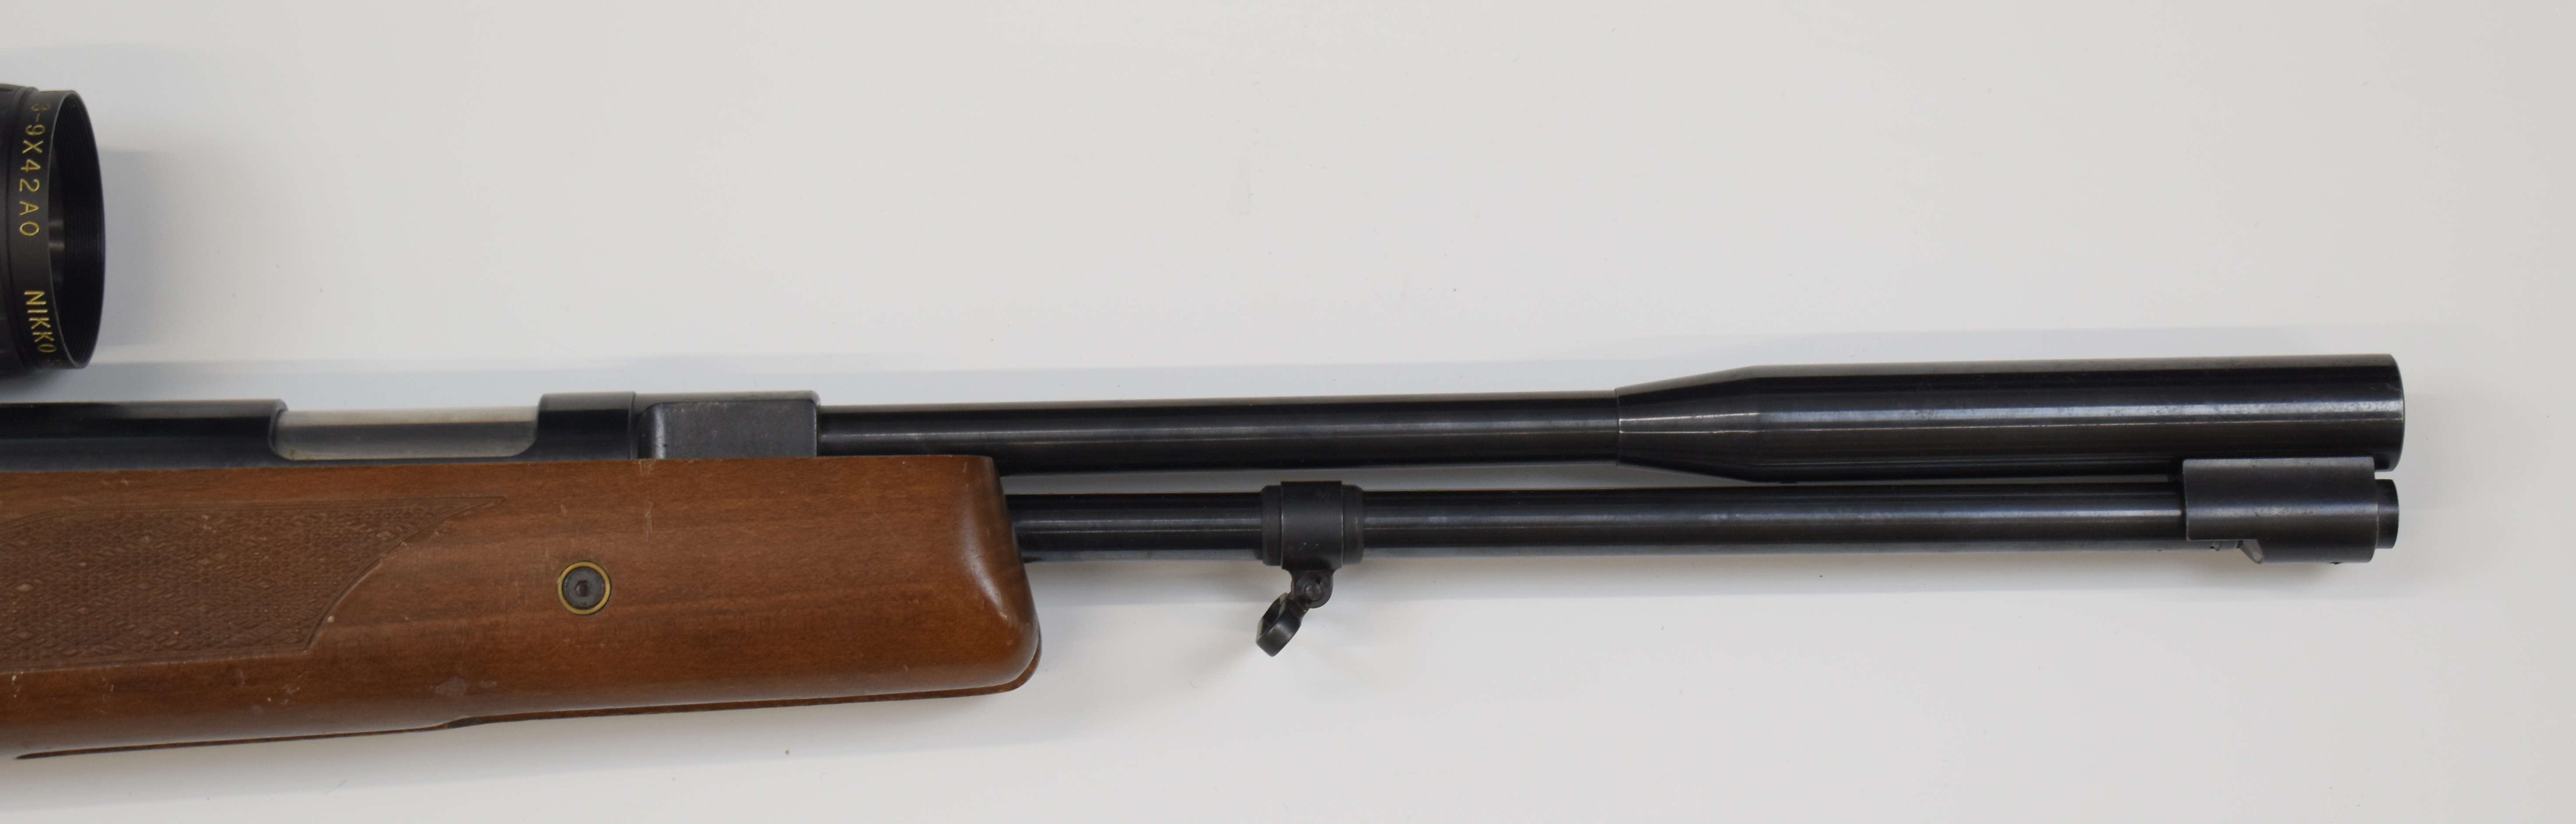 Weihrauch HW97K .177 underlever air rifle with chequered semi-pistol grip, raised cheek piece, sling - Image 5 of 10